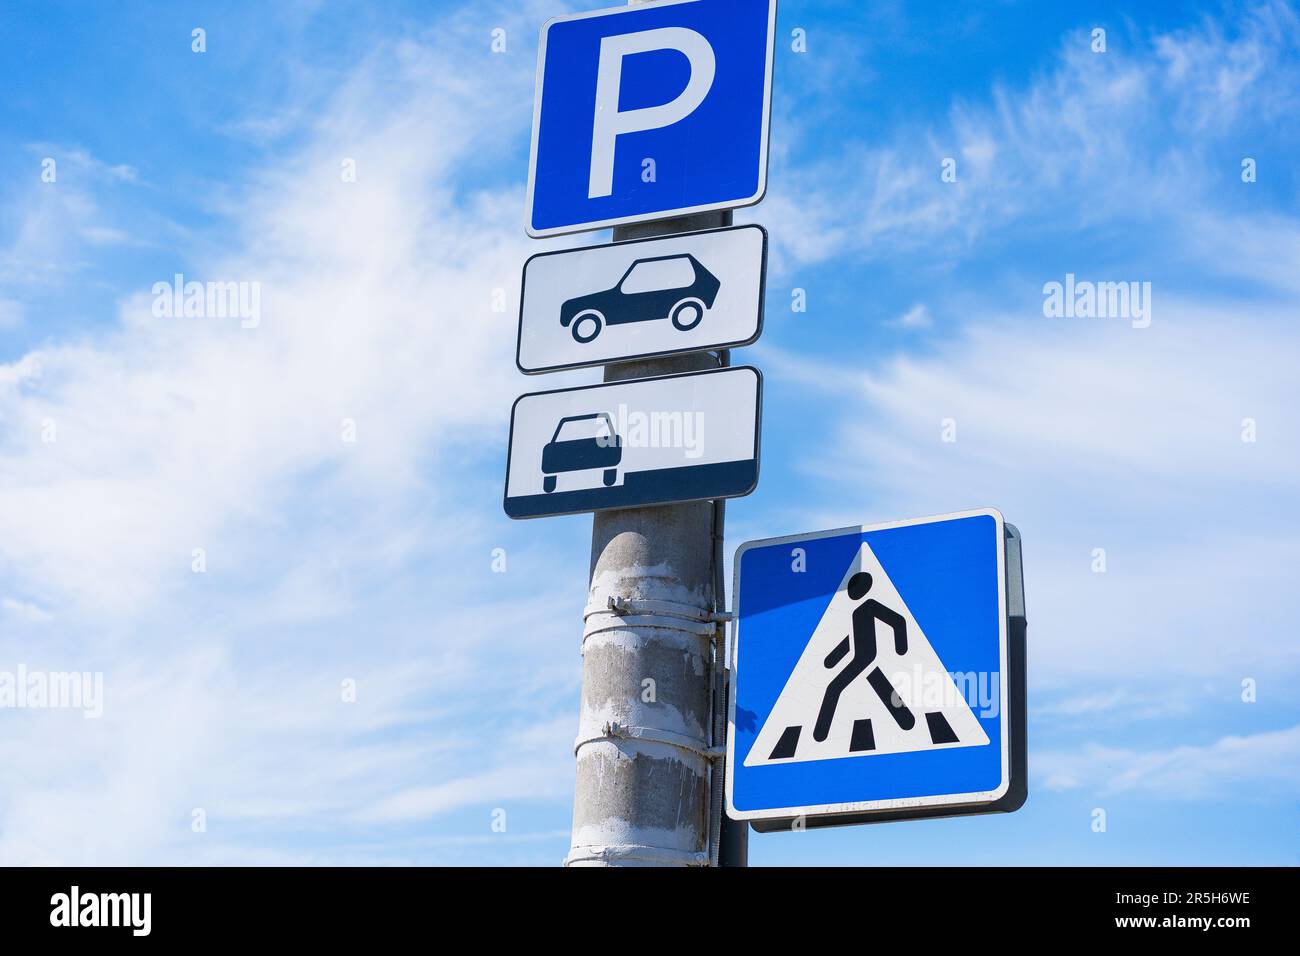 Parkschild für Personenkraftwagen mit Hinweis auf einen Parkplatz am Straßenrand mit einer Überquerung auf einem Betonpfahl vor blauem Himmelshintergrund Stockfoto